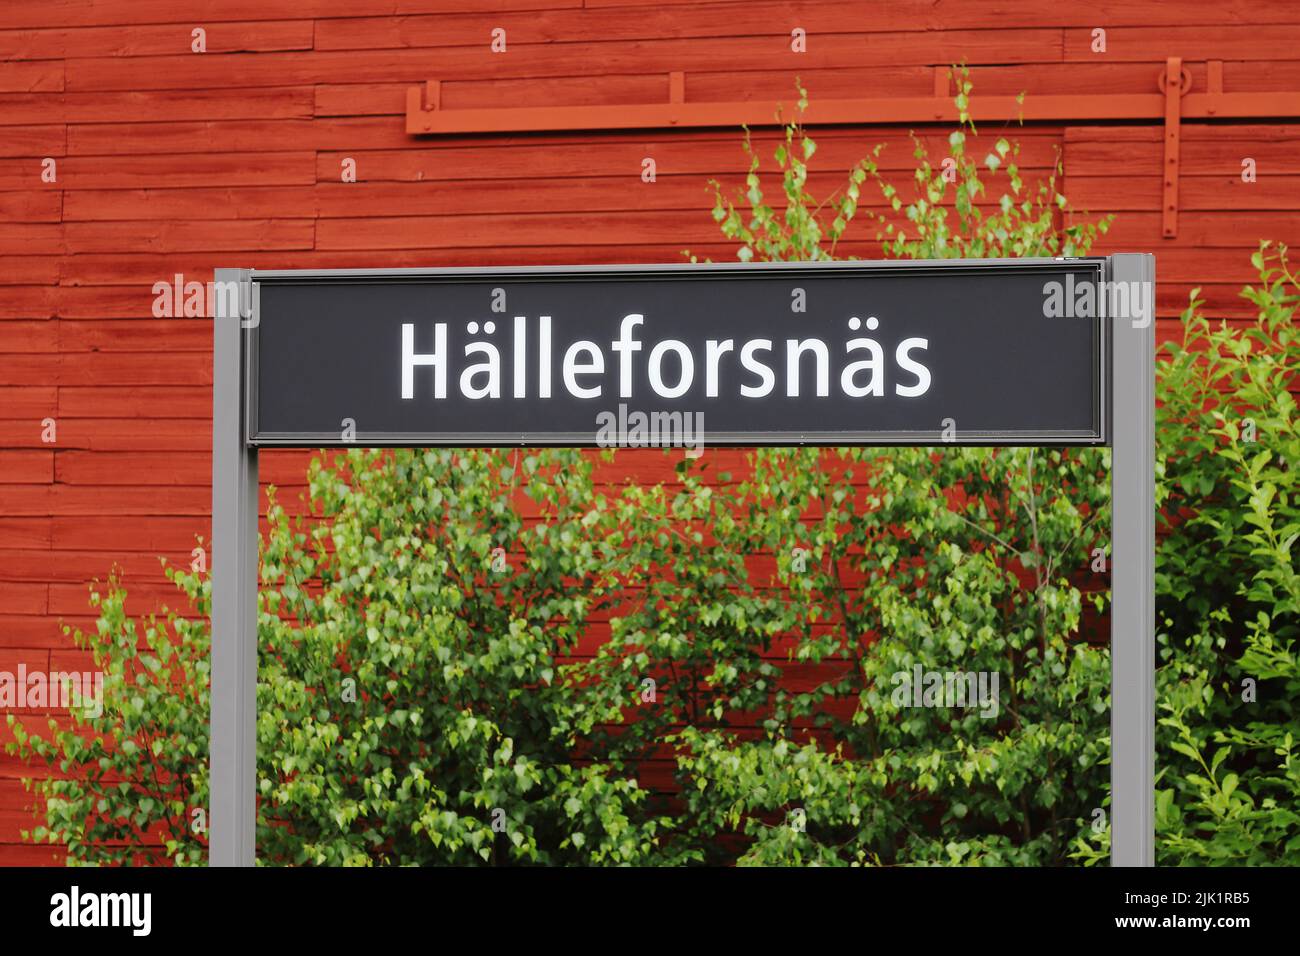 Vista de cerca de la señal de la estación de tren del pueblo de Hallaforsnas. Foto de stock